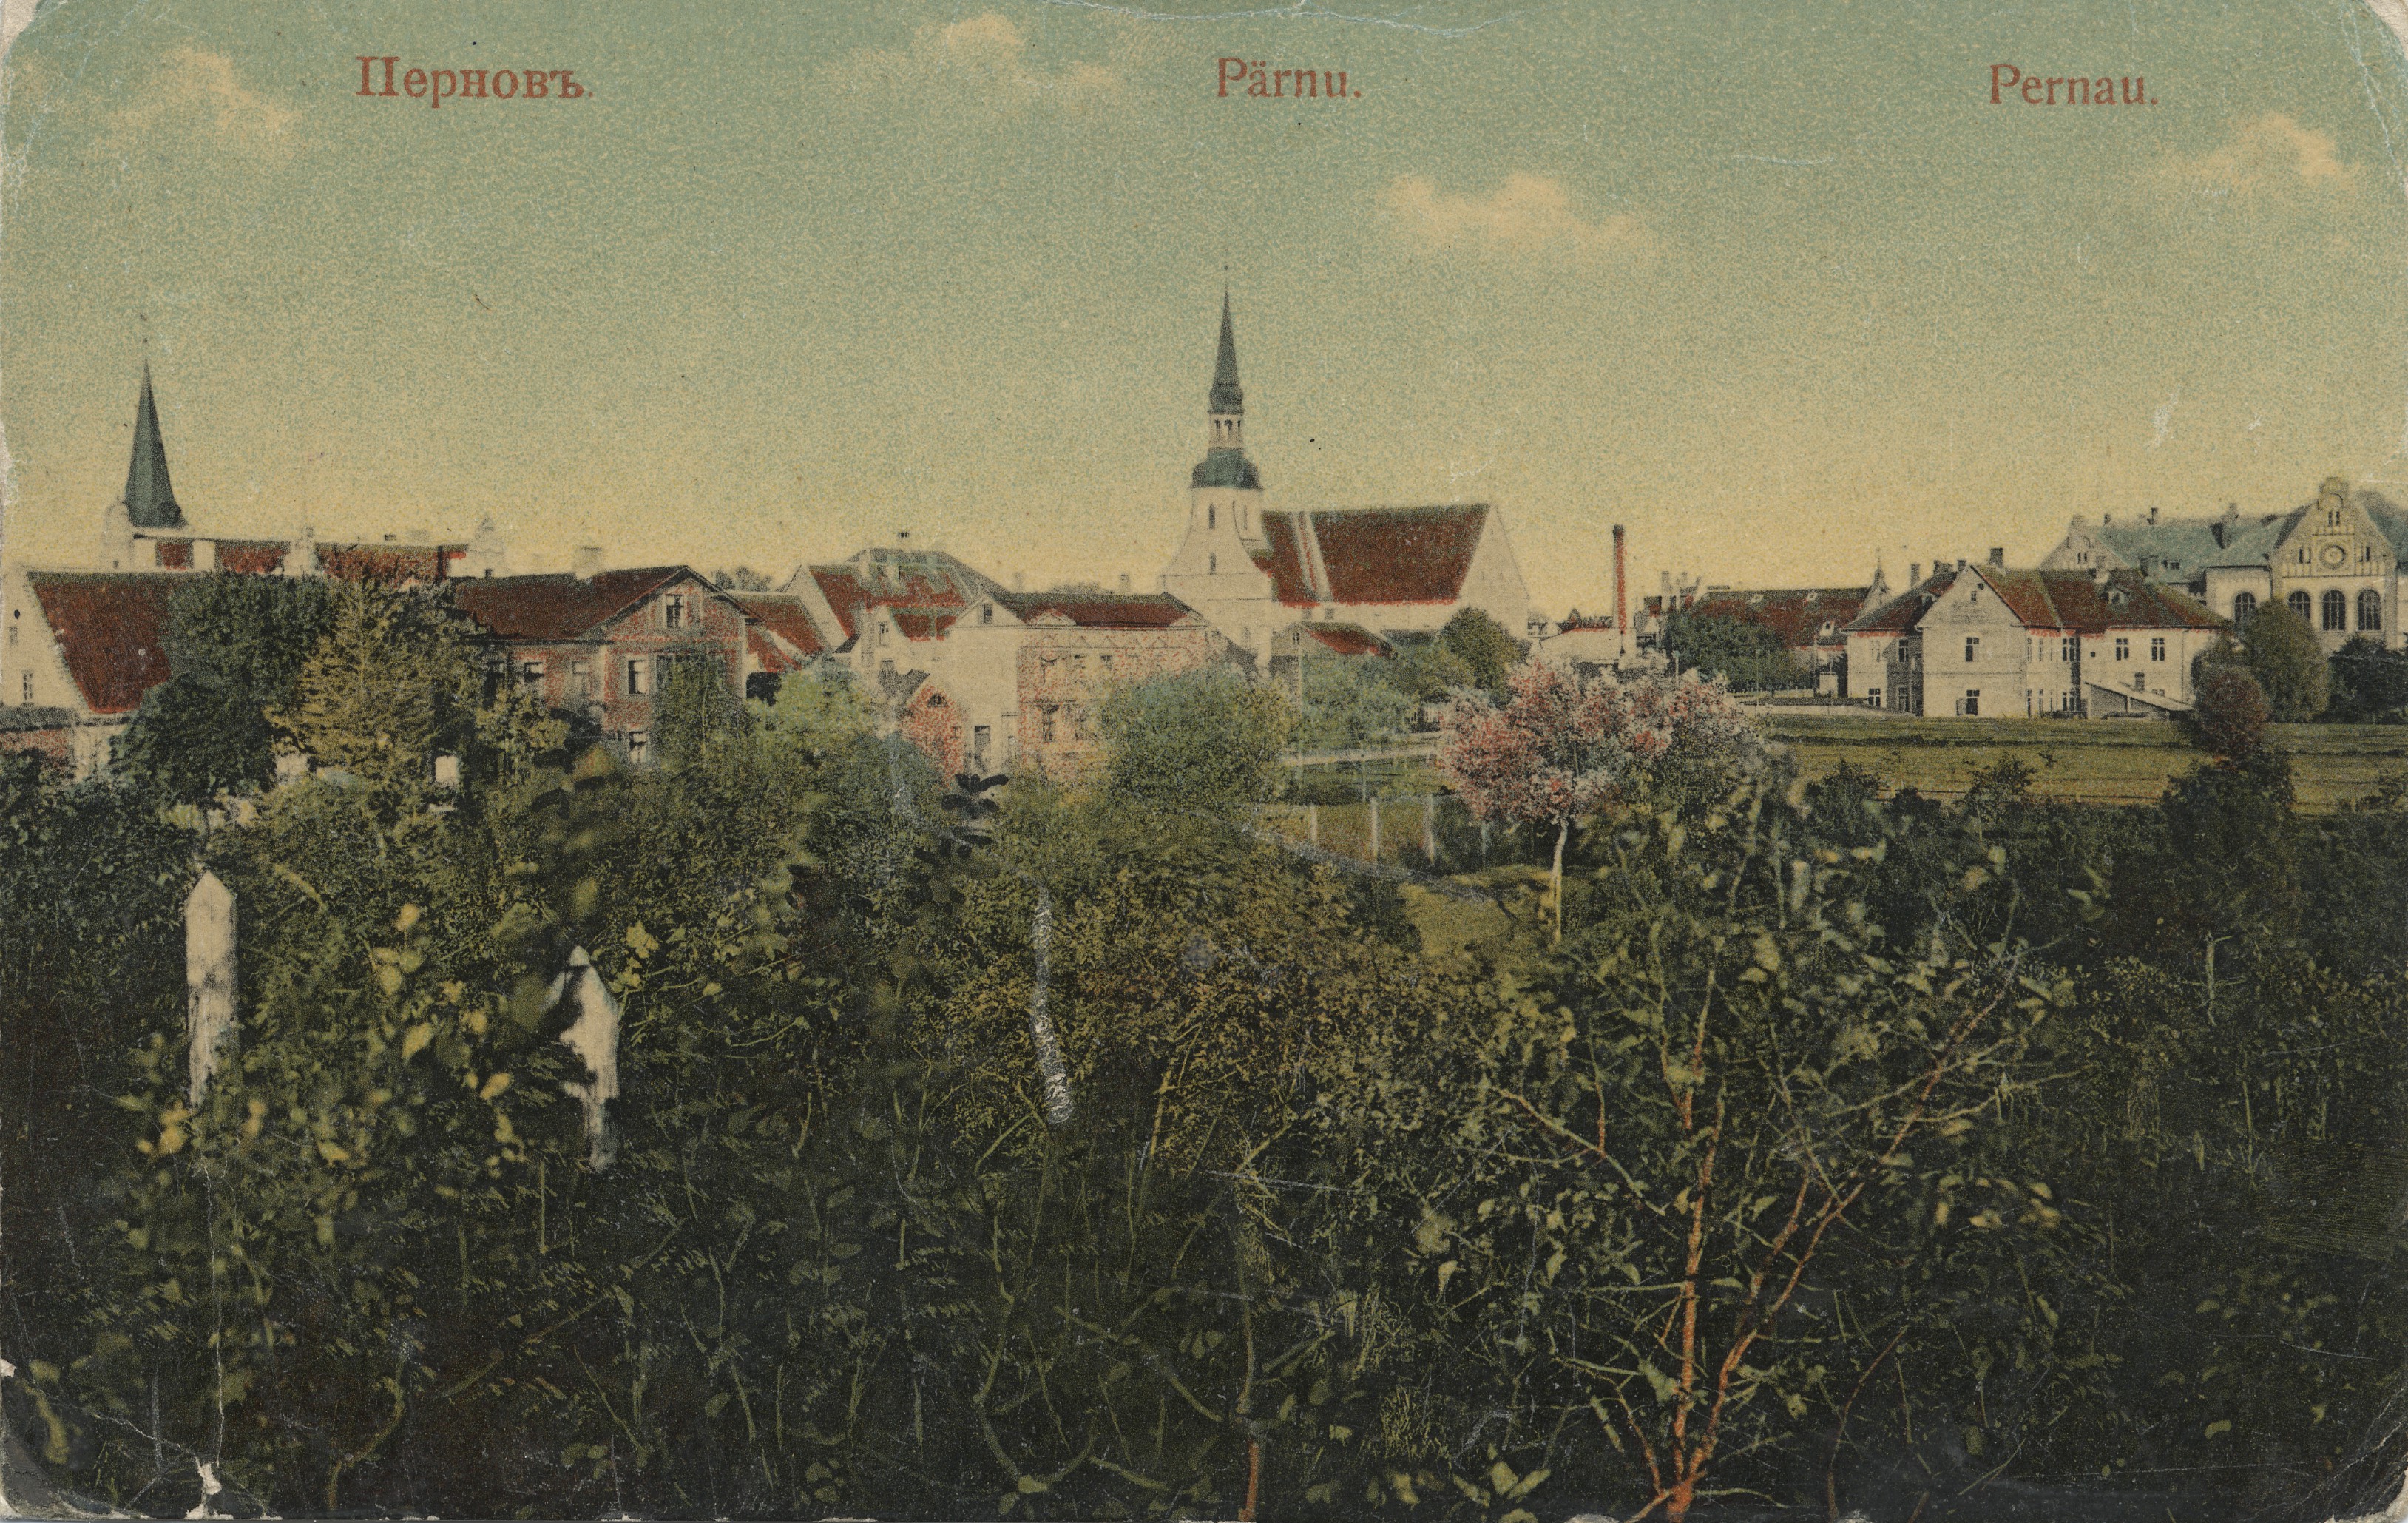 Pärnu : Pärnu = Pernau